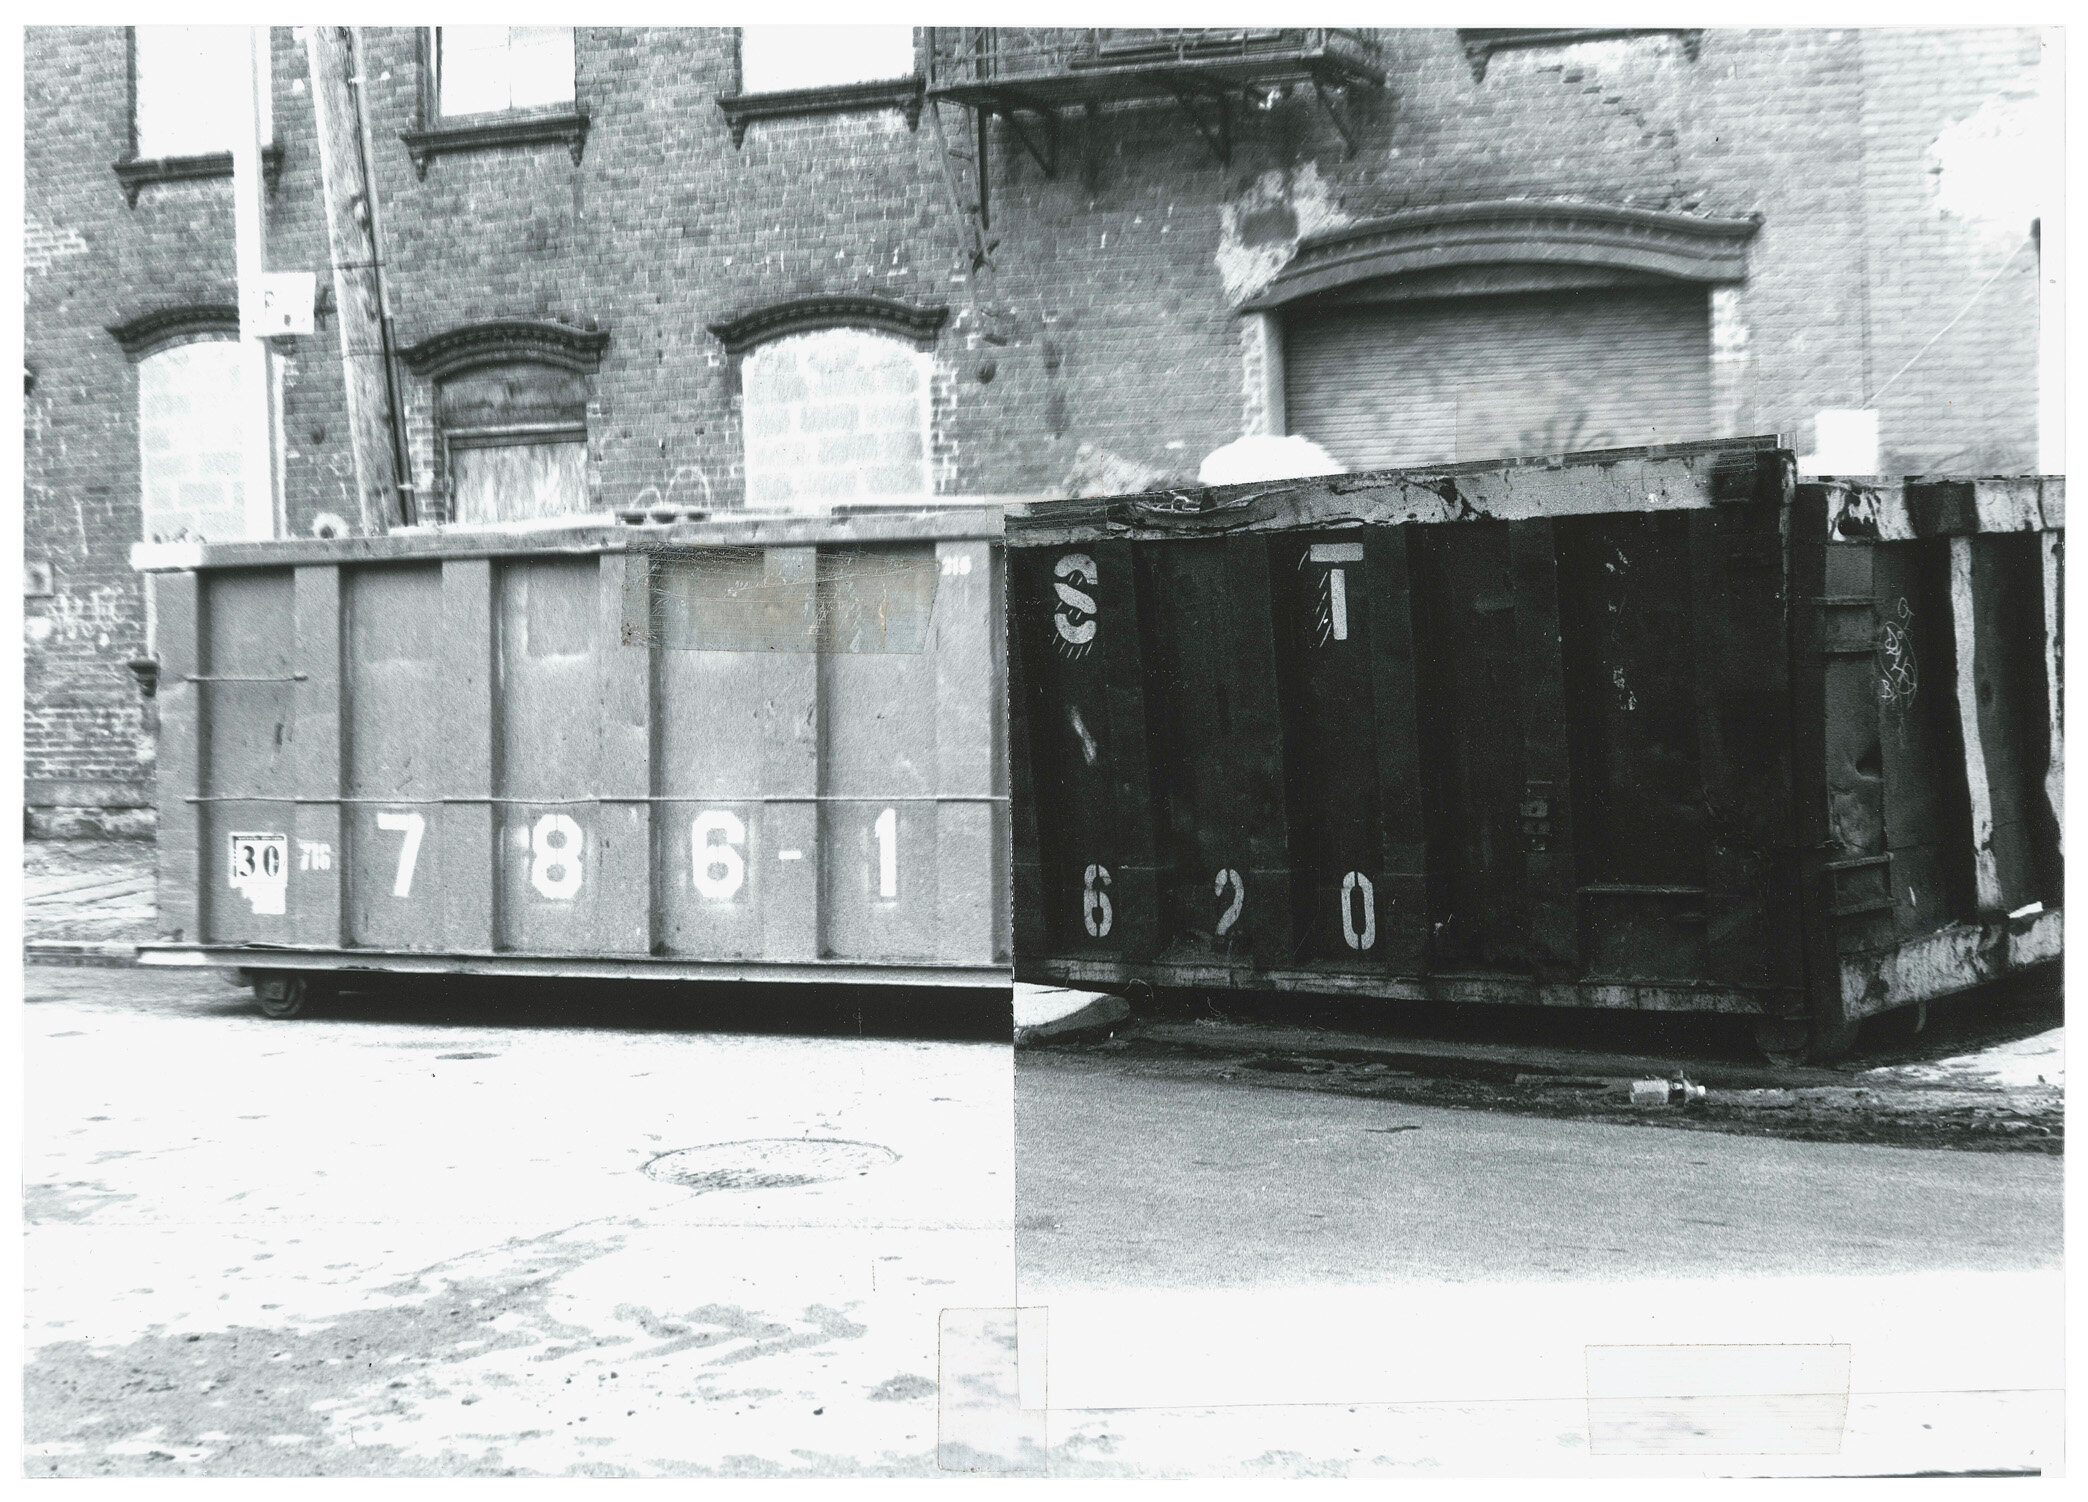  Hybrid Dumpster #9 Brooklyn, NY / Brooklyn, NY 1997 9.625 inches x 13.625 inches 